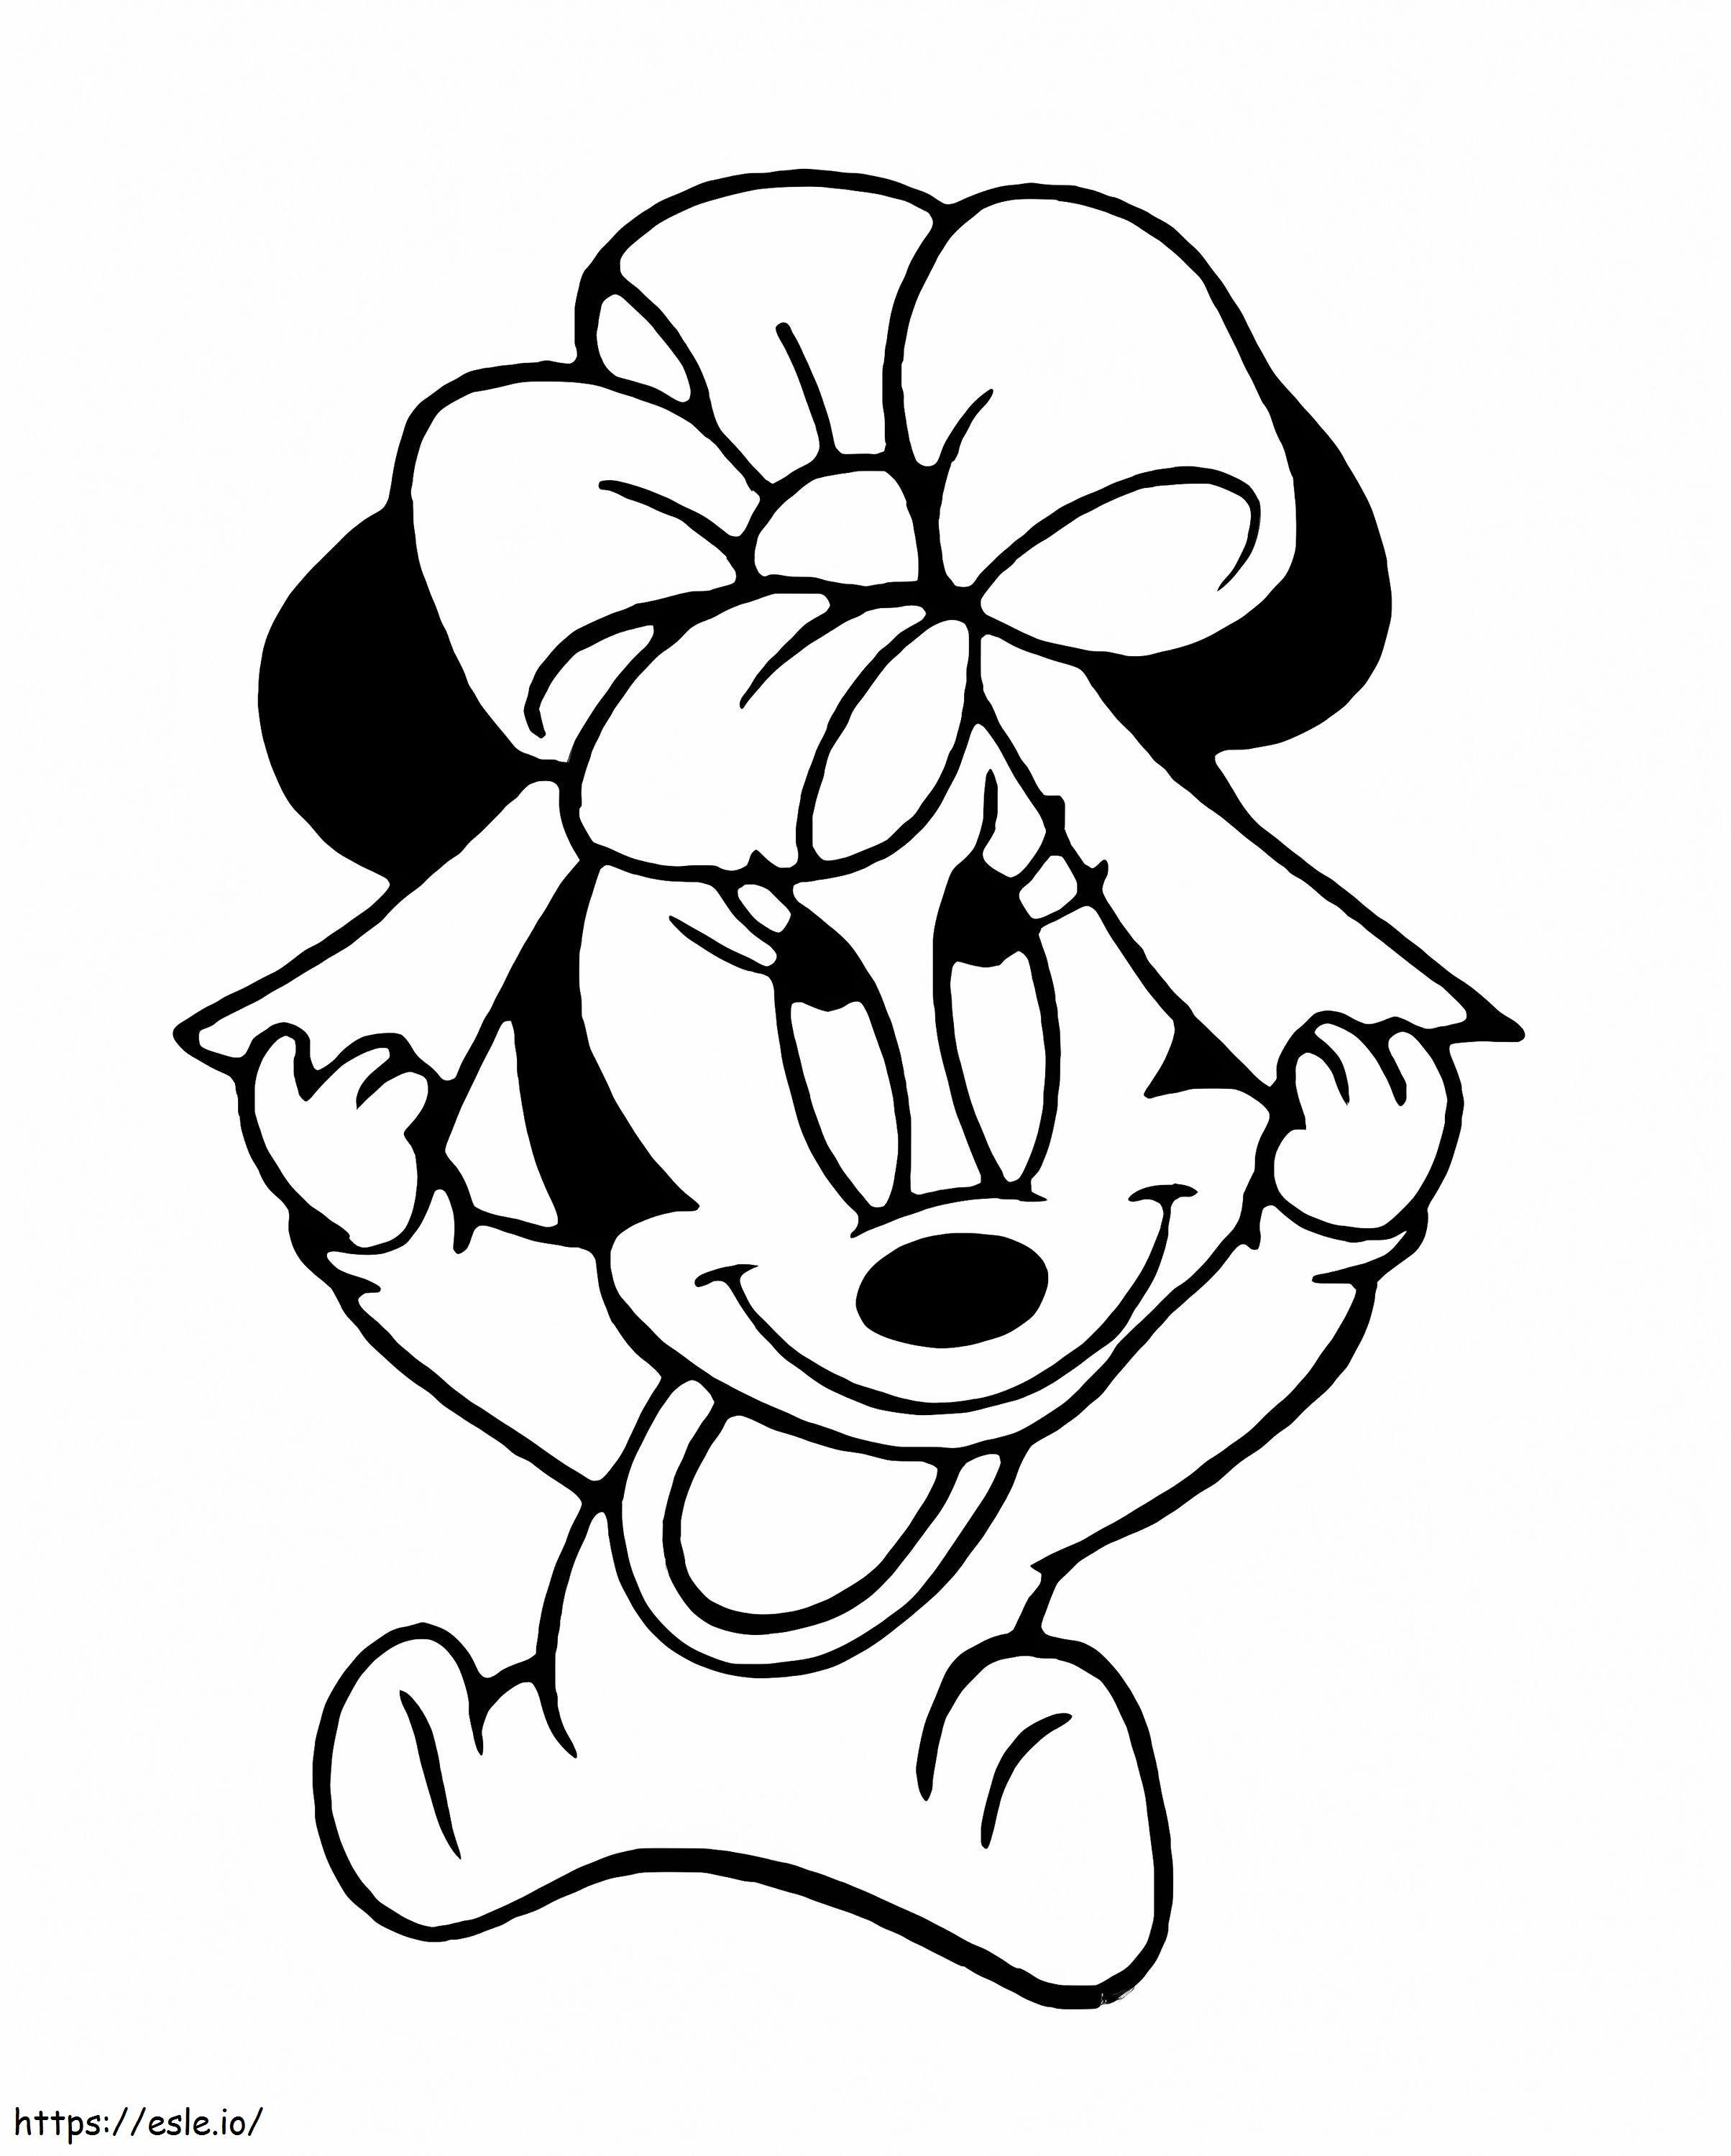 Coloriage Minnie Mouse avec ceinture à imprimer dessin